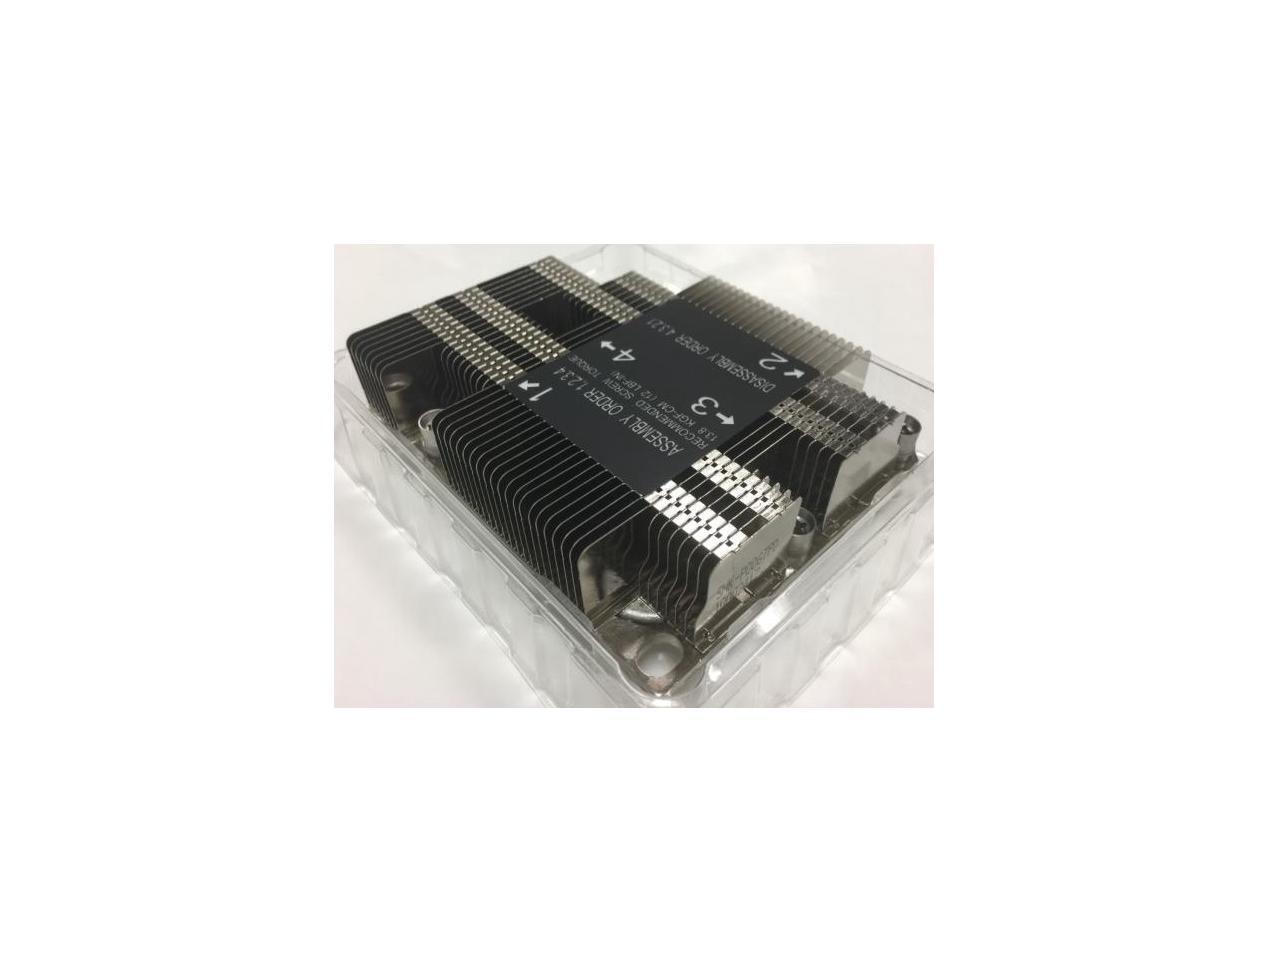 Supermicro SNK-P0067PD LGA 3647-0 1U X11 Purley Platform CPU Heat Sink